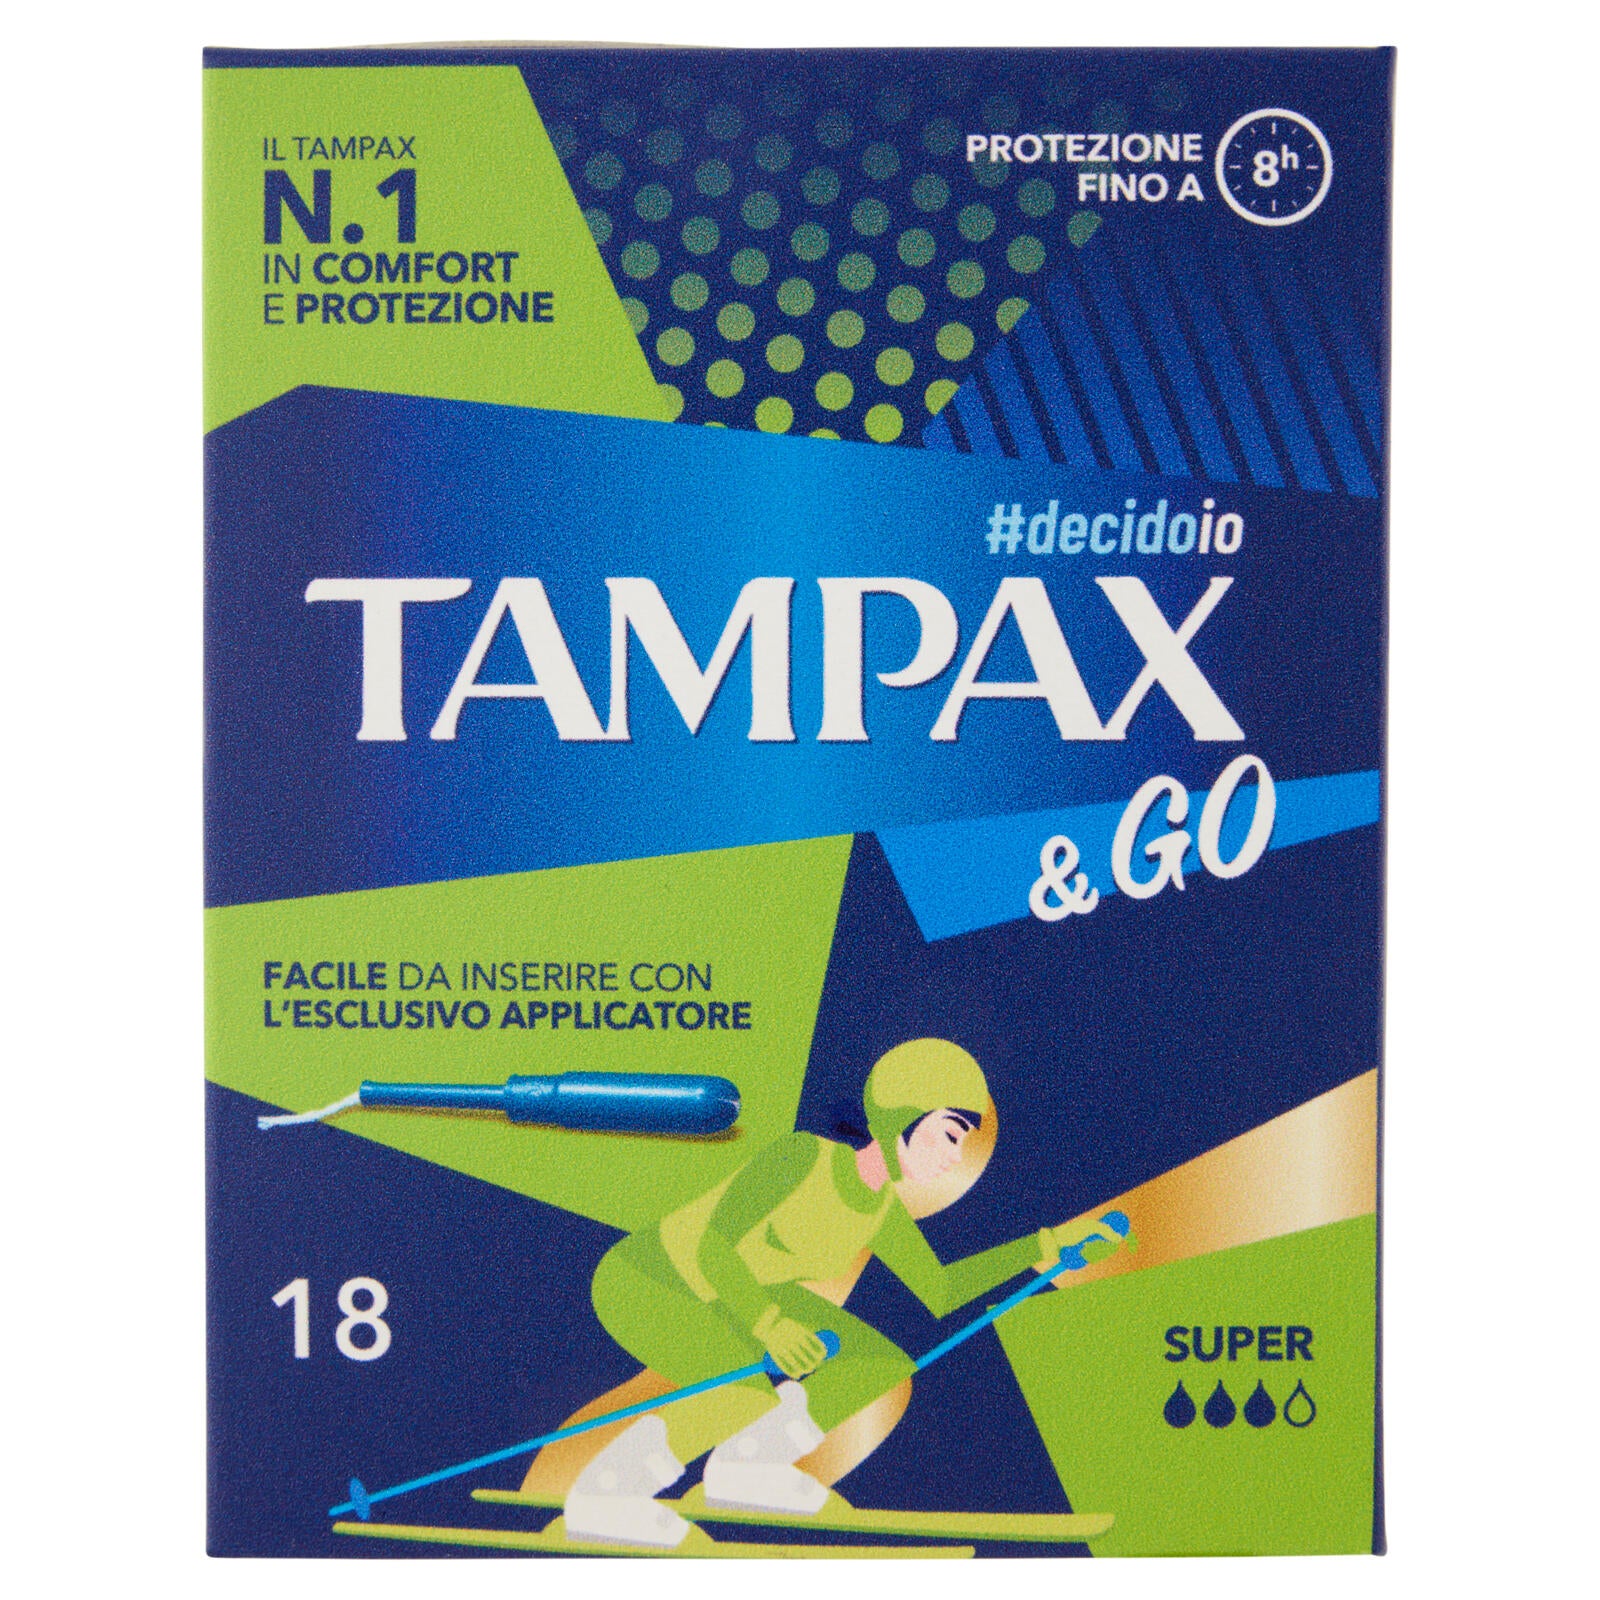 Tampax & Go Super 18 pz